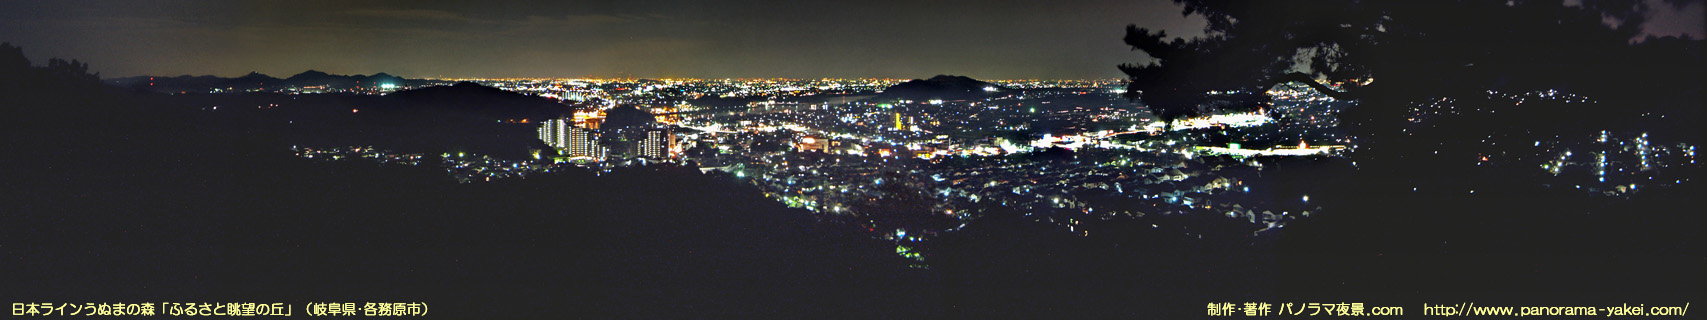 日本ラインうぬまの森「ふるさと眺望の丘」からのパノラマ夜景写真